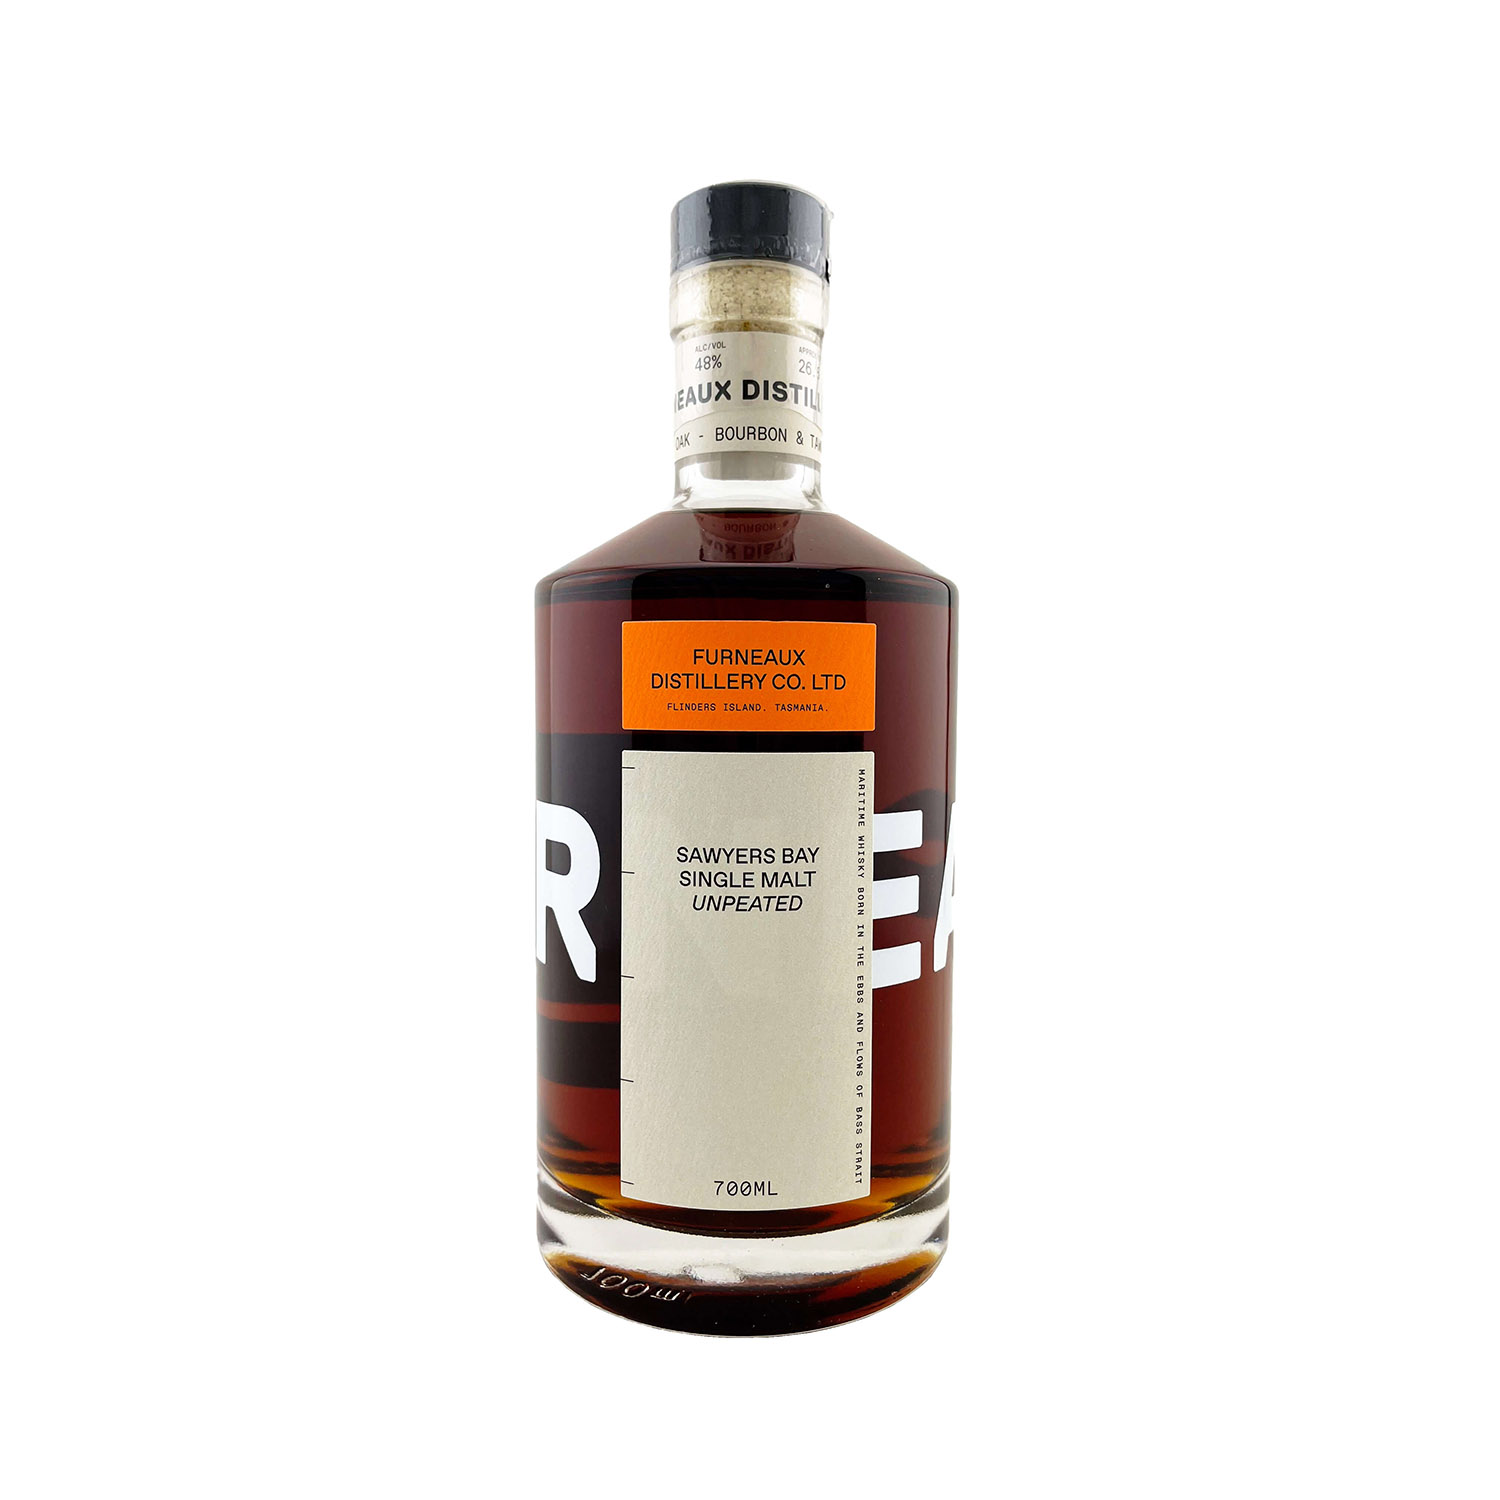 Furneaux Distillery Co. ‘Sawyers Bay’ Unpeated Single Malt Whisky 700ml 48%, Australian Whisky, The Old Barrelhouse